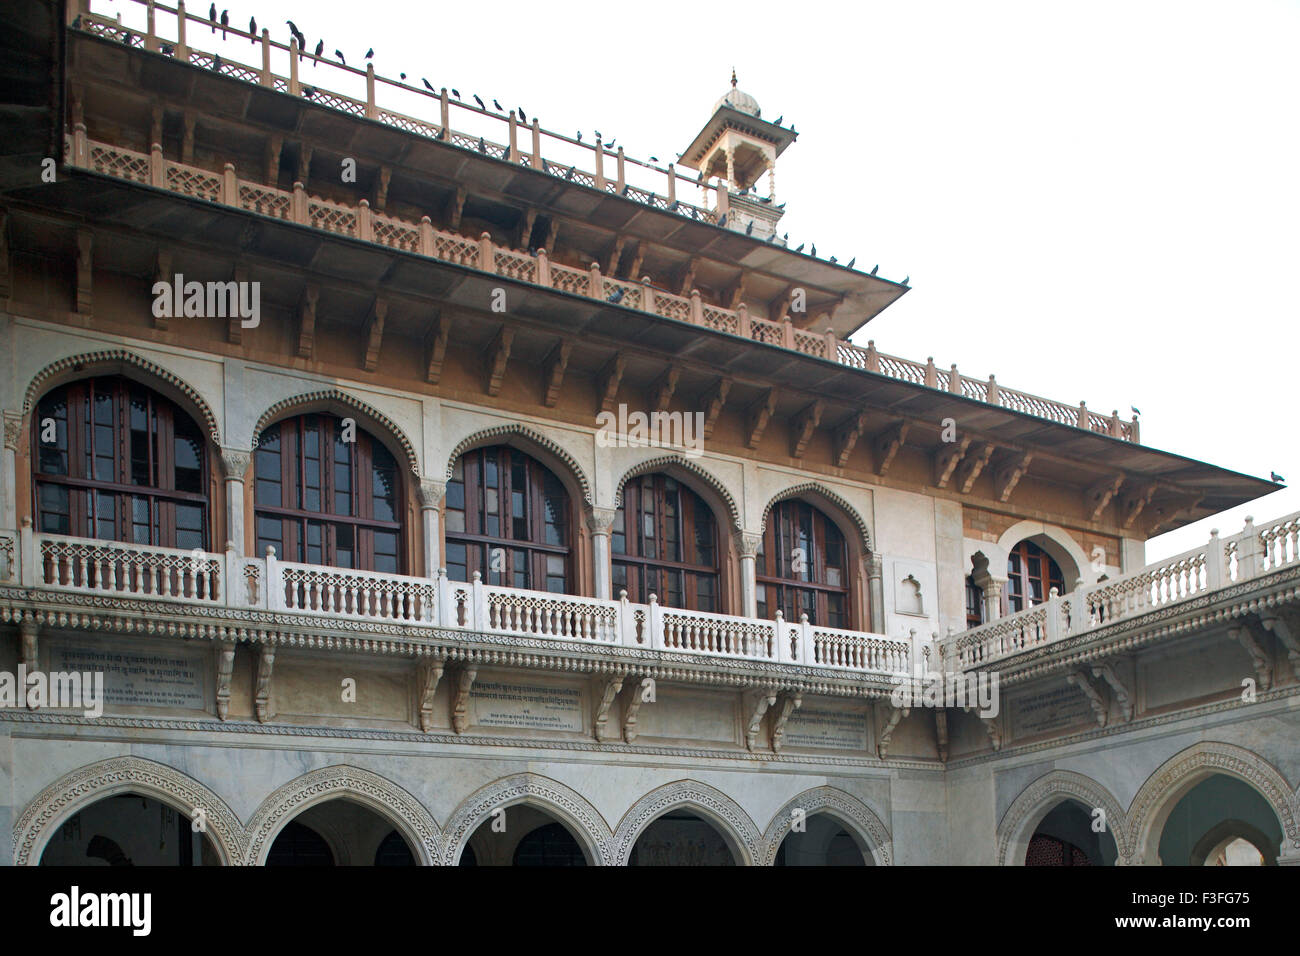 Immeuble du patrimoine britannique des Indes Musée Central Albert Museum à Ram Niwas jardin public ; ; ; Inde Rajasthan Jaipur Banque D'Images